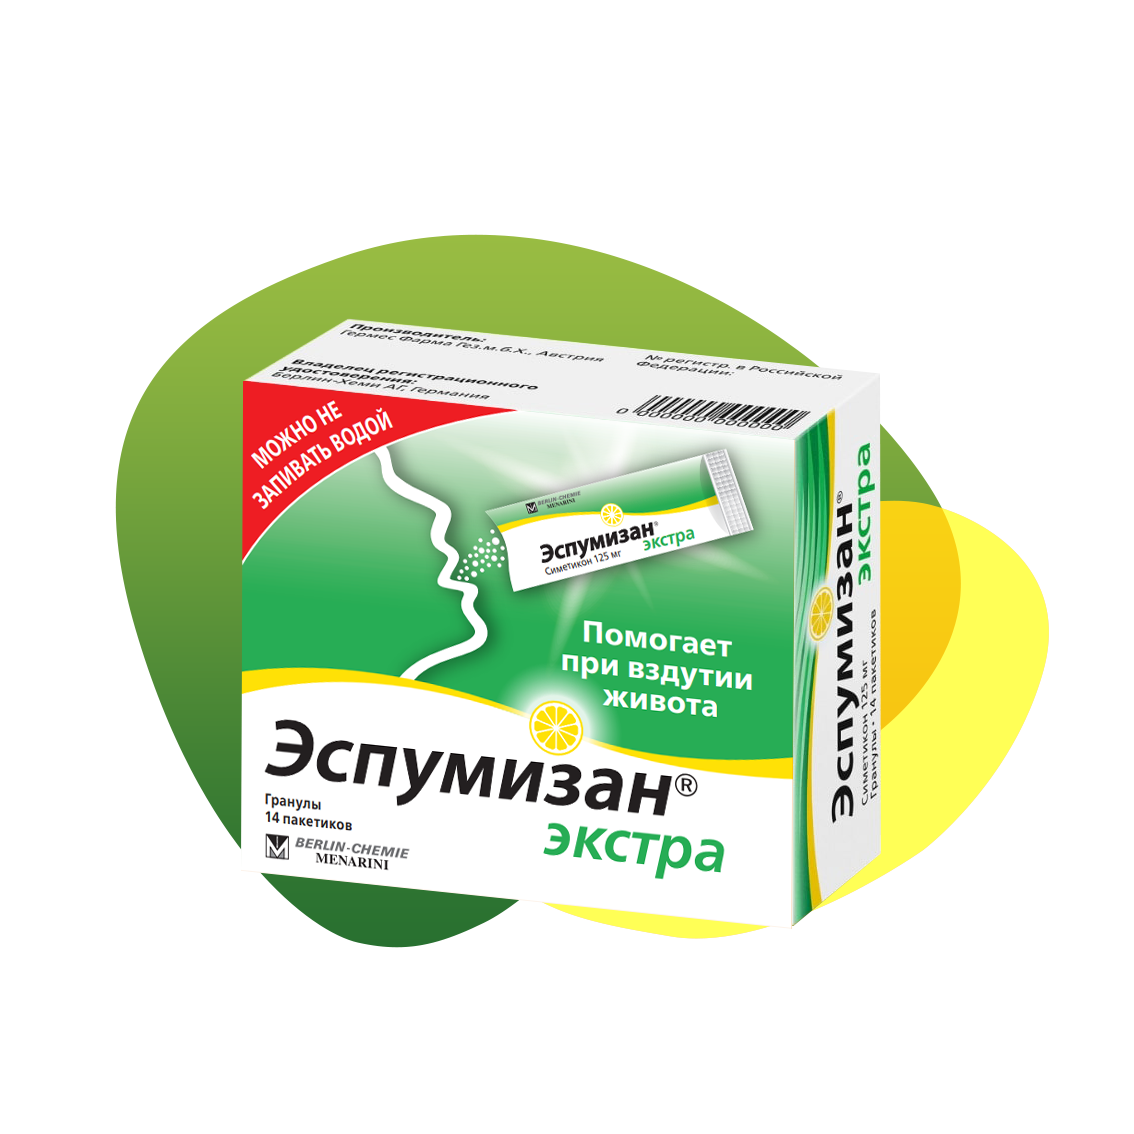 Packaging of Espumisan 125 mg Granules